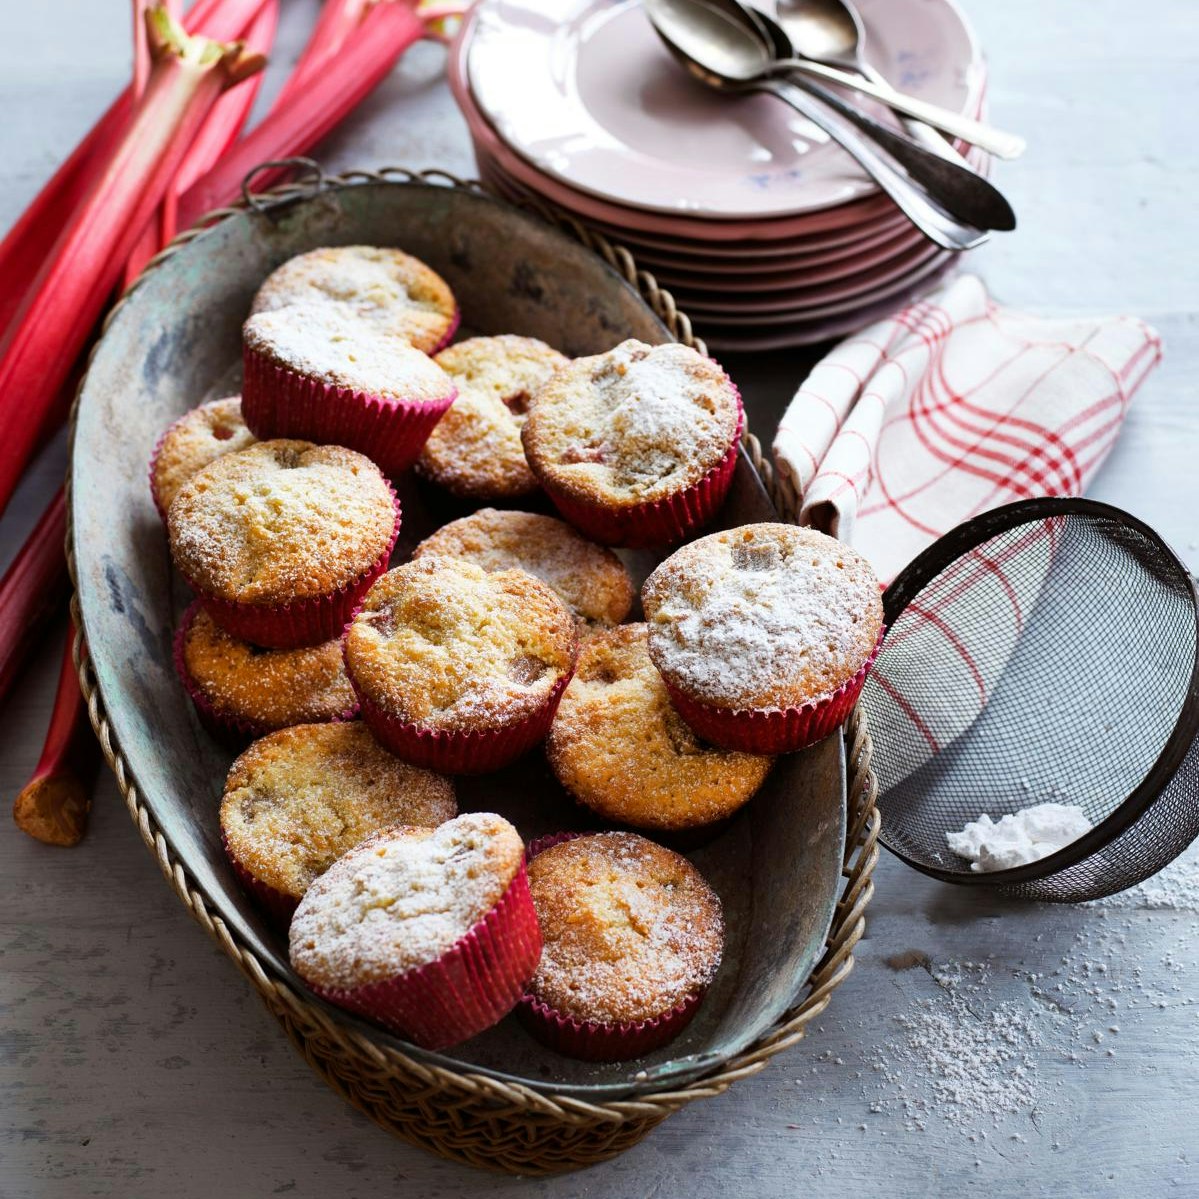 Muffins med rabarber og marcipan - de bedste rabarbermuffins.